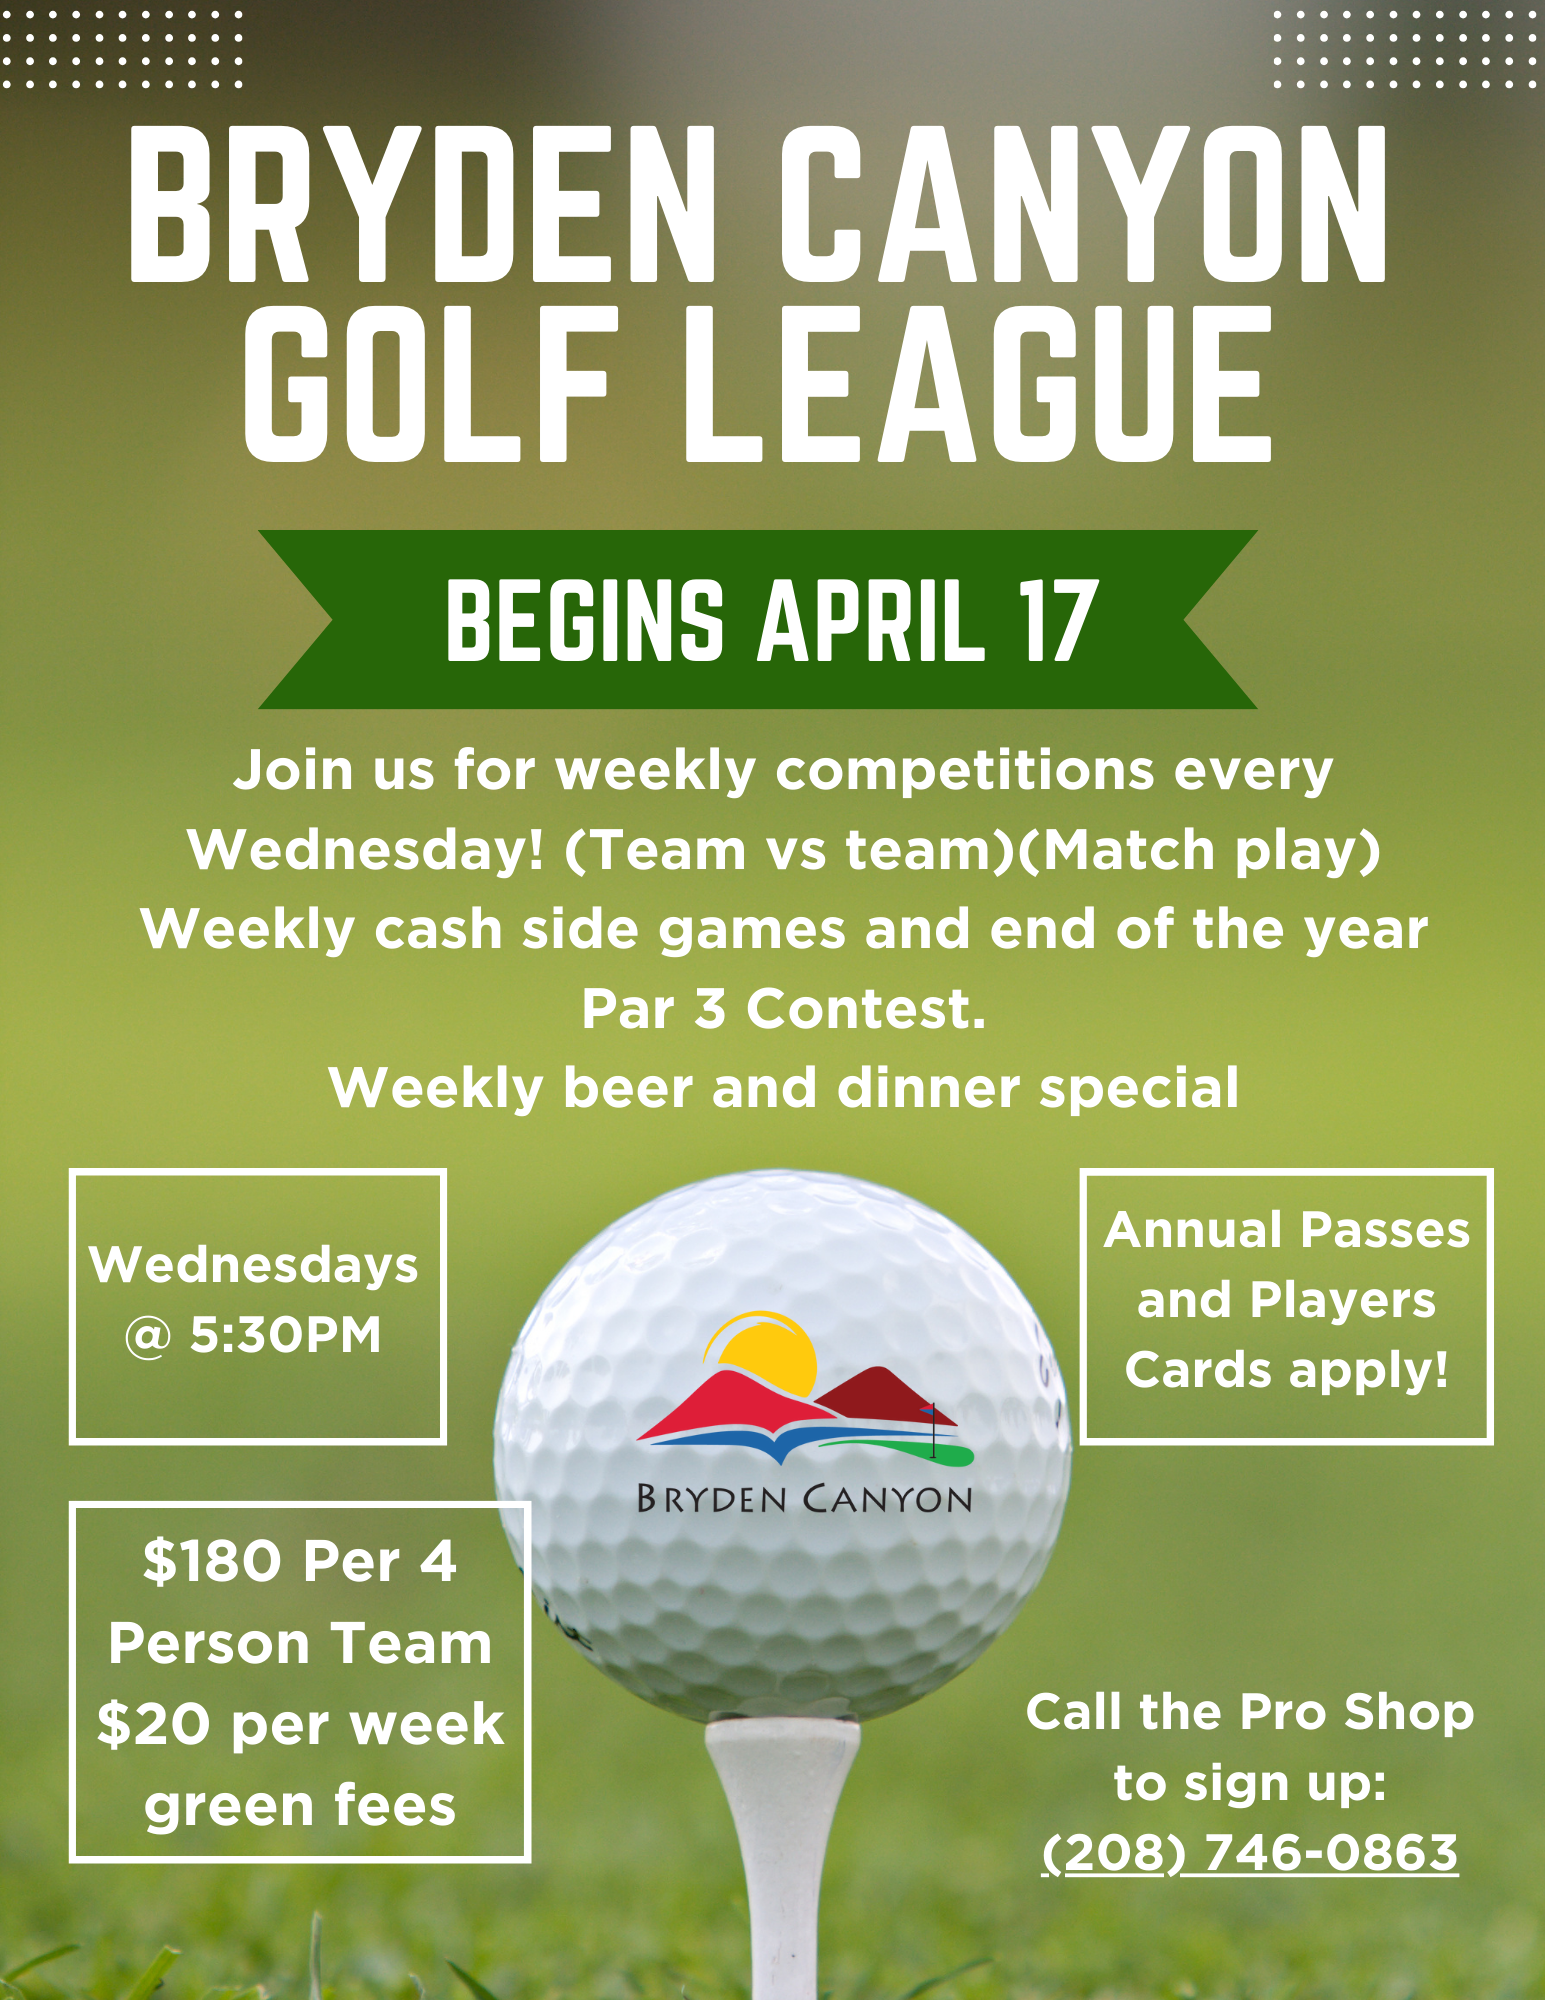 Bryden Canyon Golf League Flyer